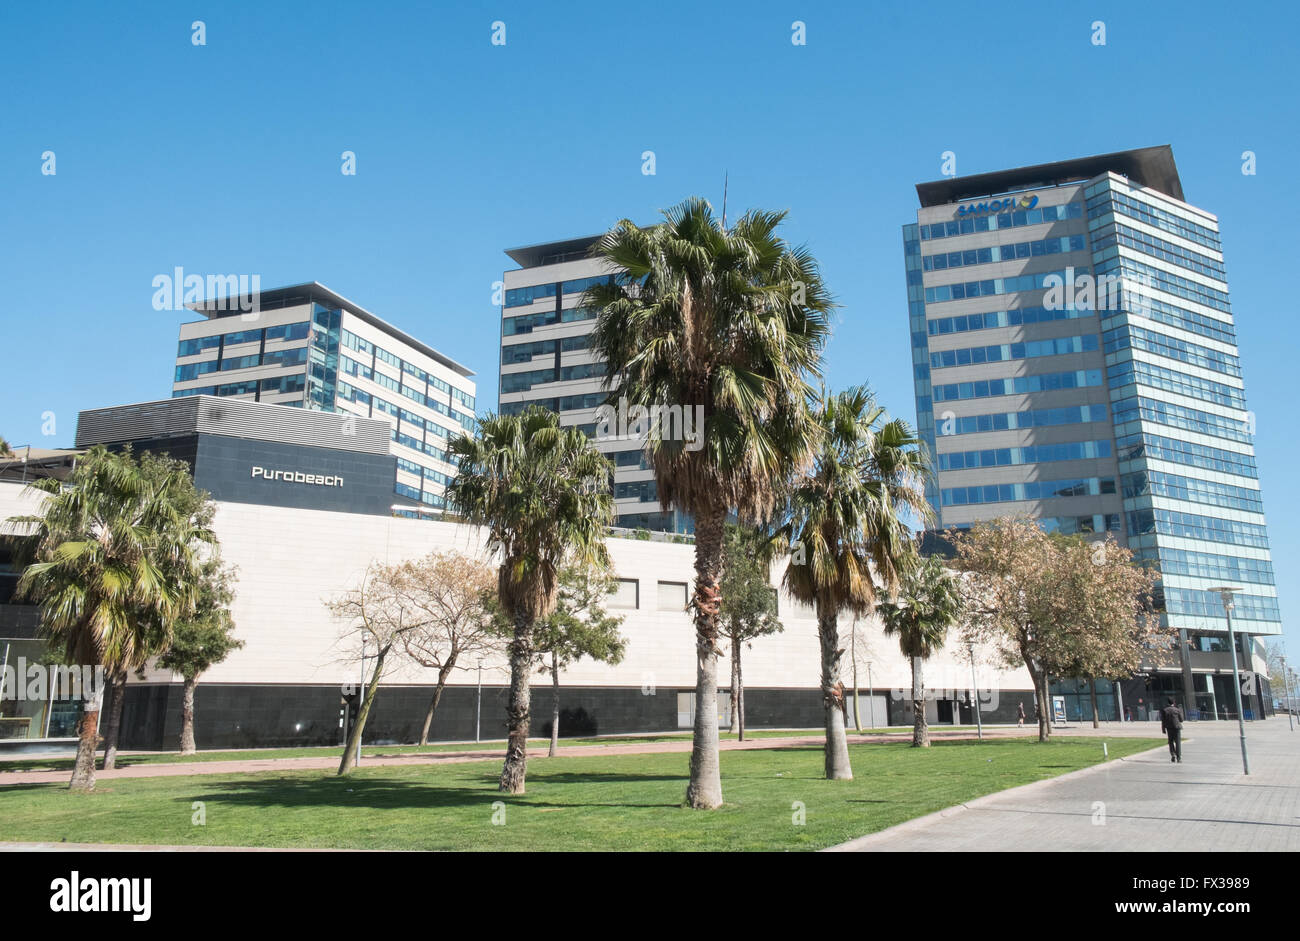 Sanofi immeuble de bureaux sur la droite dans la région de Diagonal Mar Forum,Zone Portuaire de Barcelone, Catalogne, Espagne, Europe. Banque D'Images